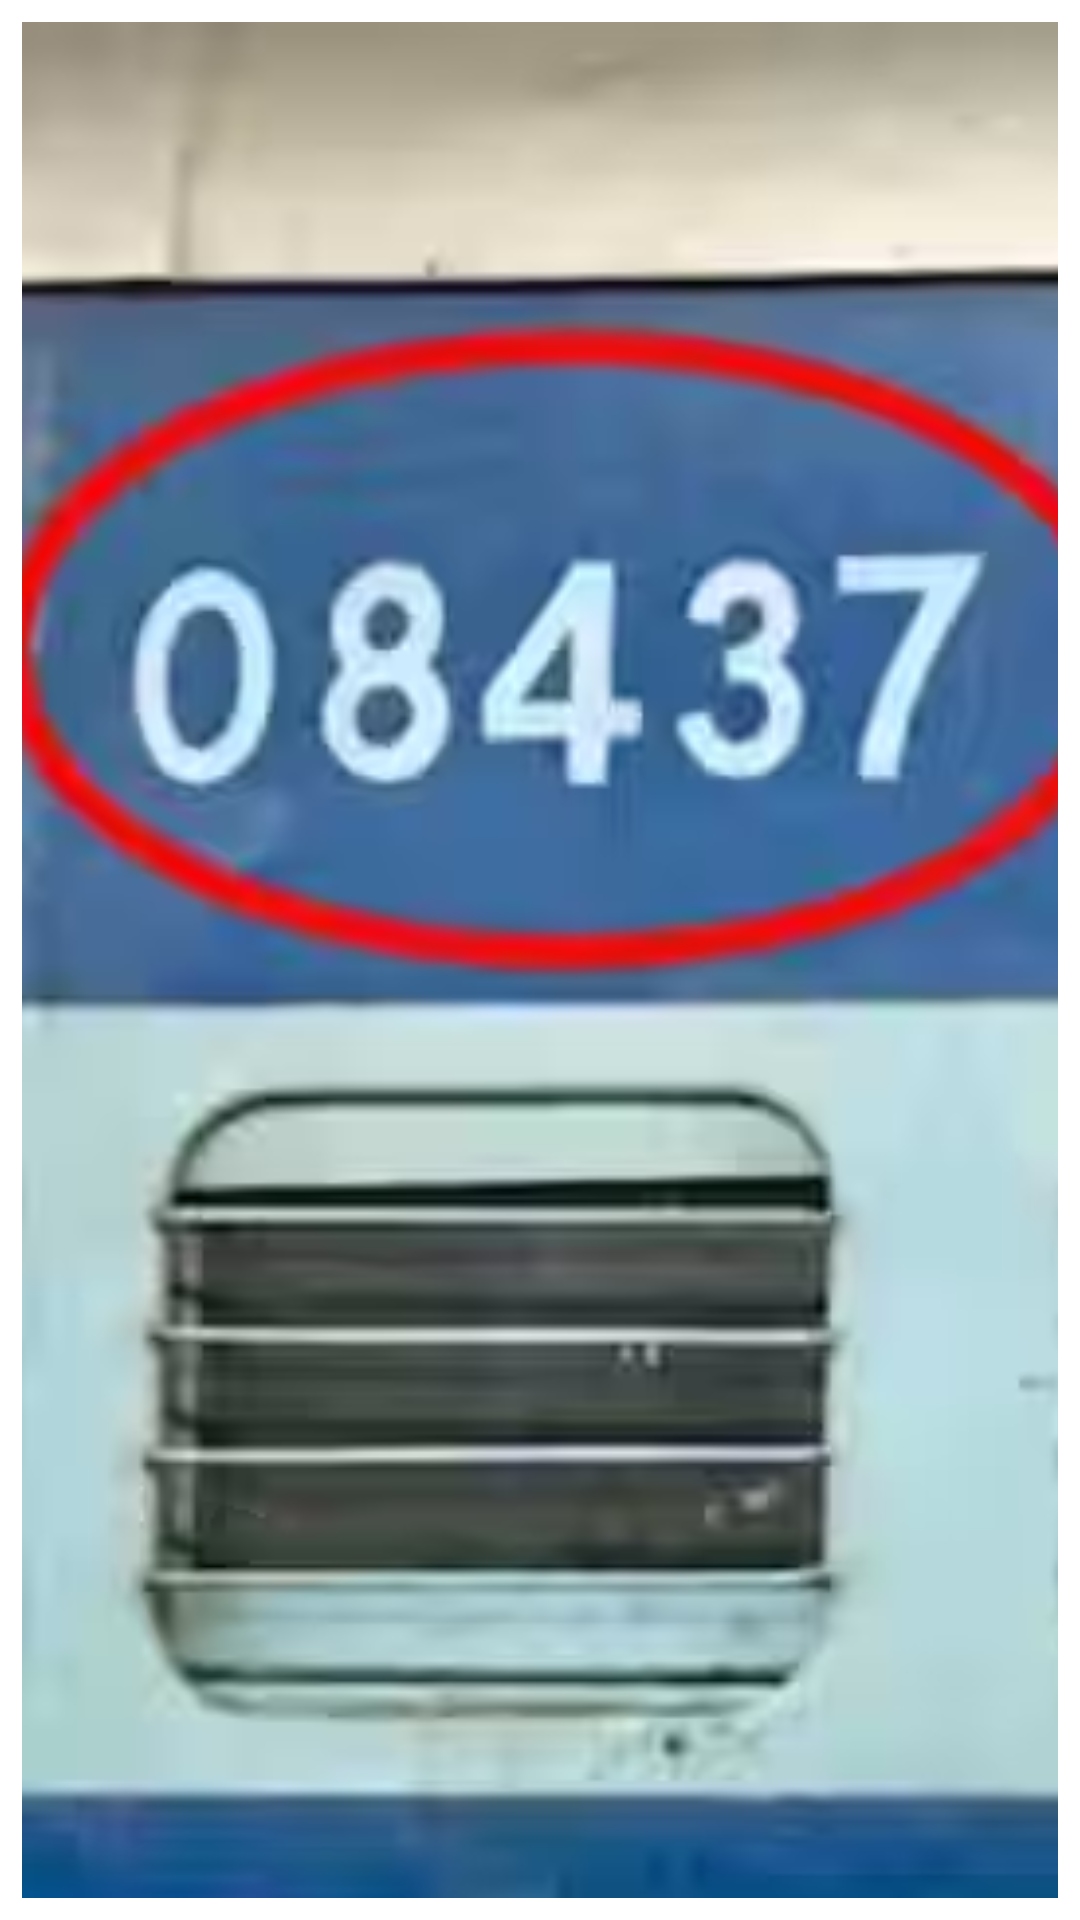 ट्रेन के डिब्बों पर इन नंबरों का मतलब जानते हैं आप? 